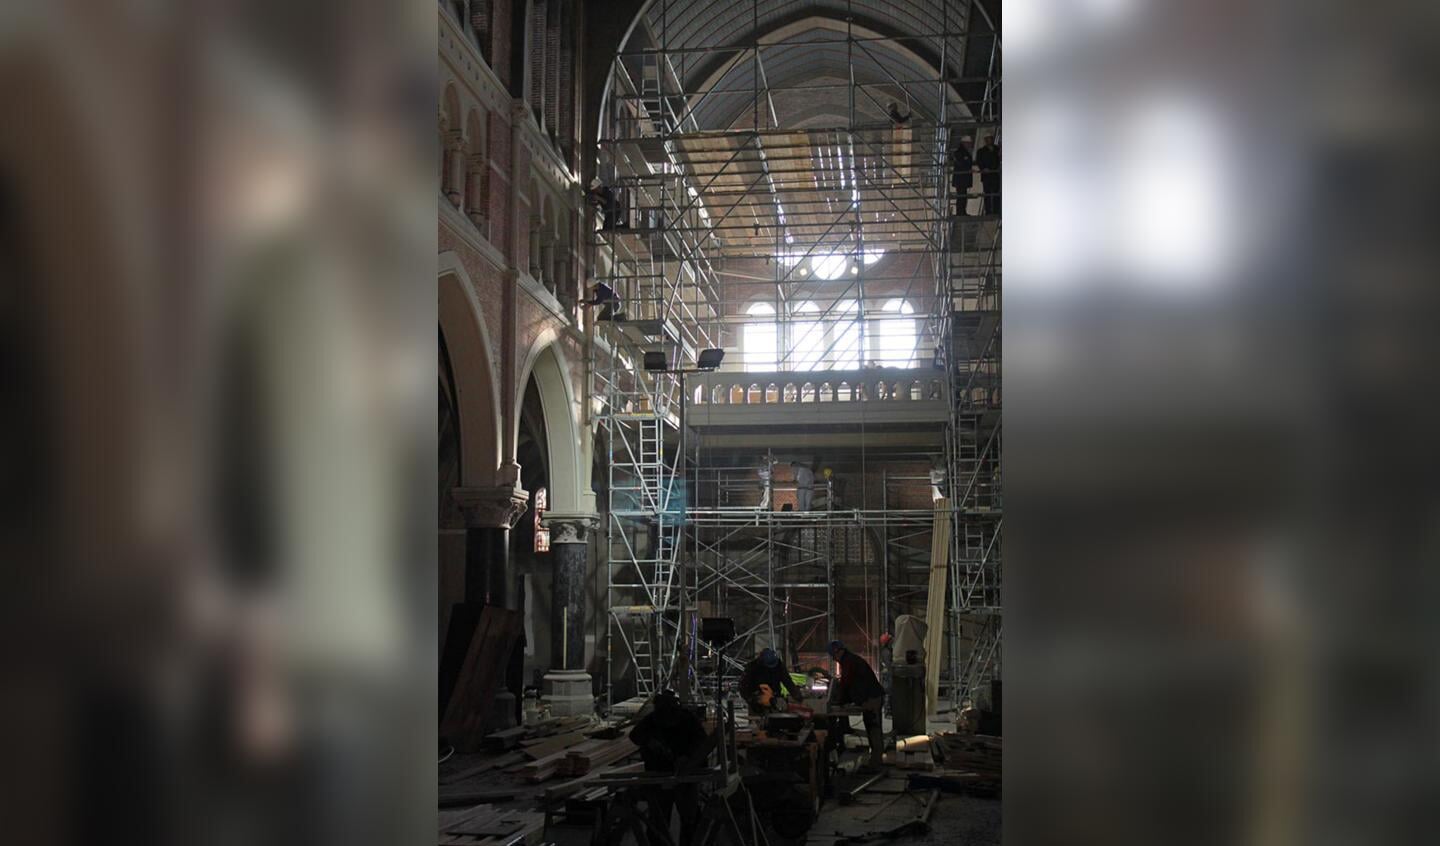 De restauratie van de Heilig Hartkerk vordert. De klok beiert al weer. foto Raymond Tillieu